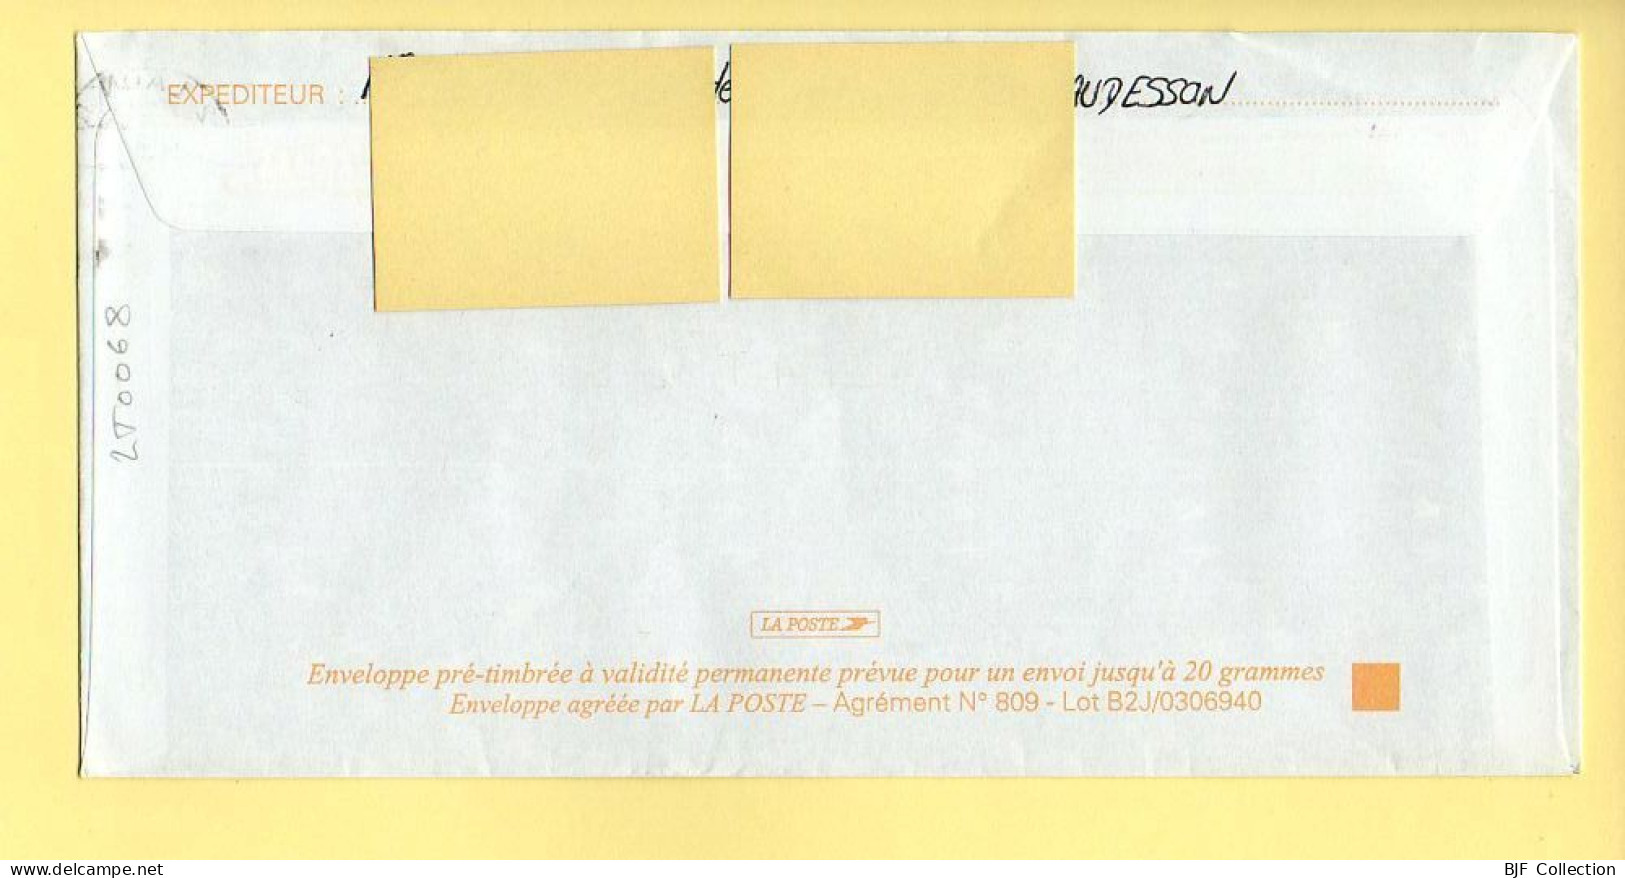 PAP Marianne De Luquet – URCEL (02) - FETE DU BOIS (N° 809 – Lot B2J/0306940) – 21/09/2005 - Prêts-à-poster: Repiquages /Luquet